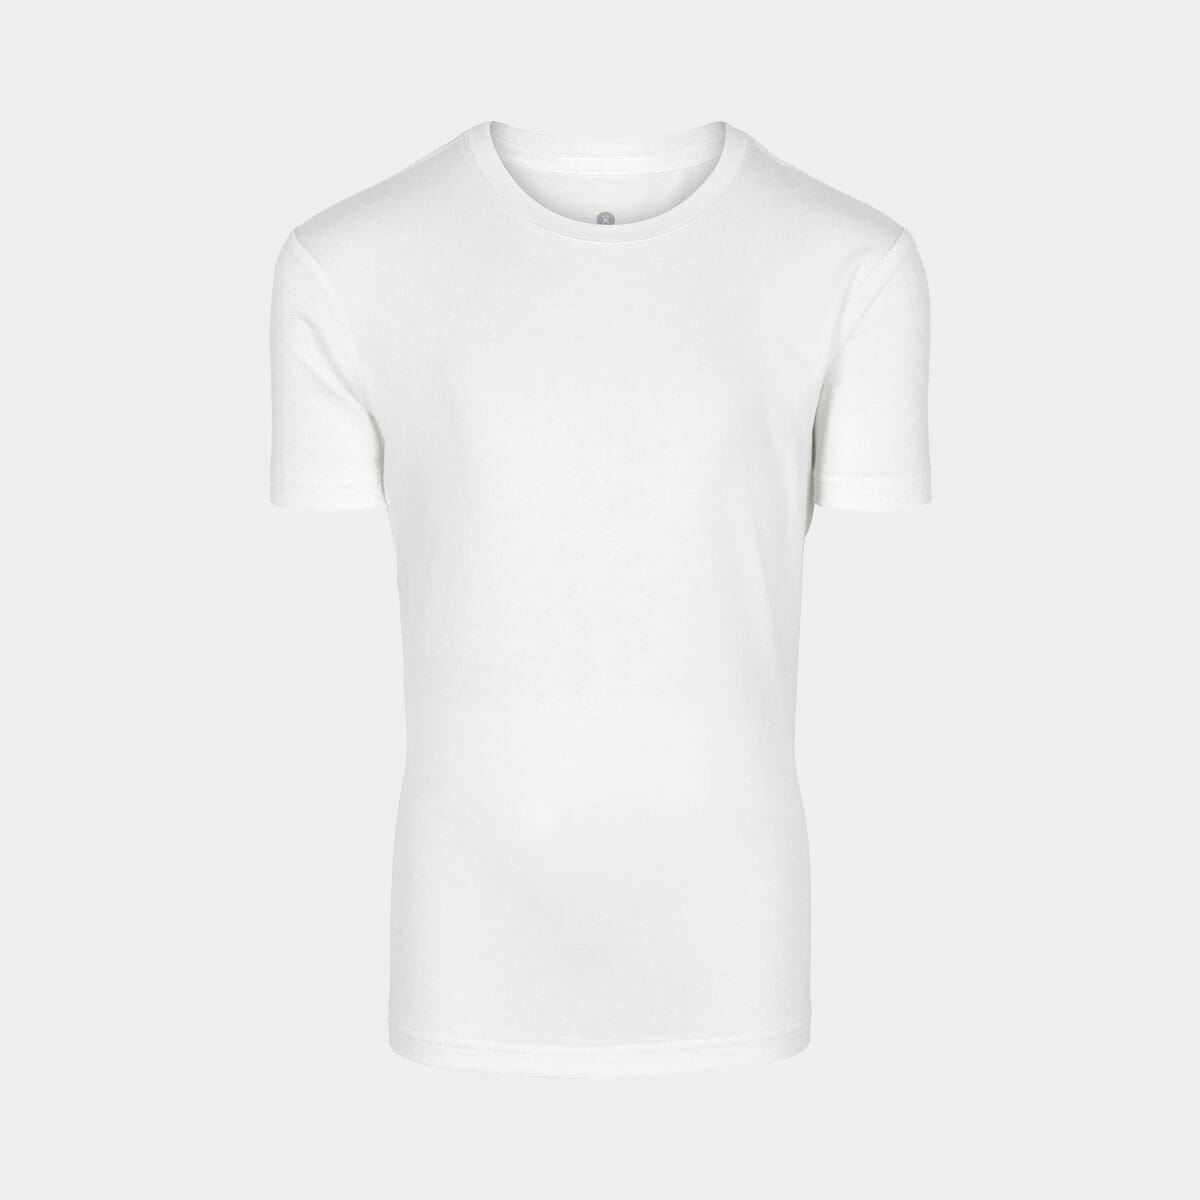 Super blød hvid bambus T-shirt til drenge fra JBS of Denmark, 11/12